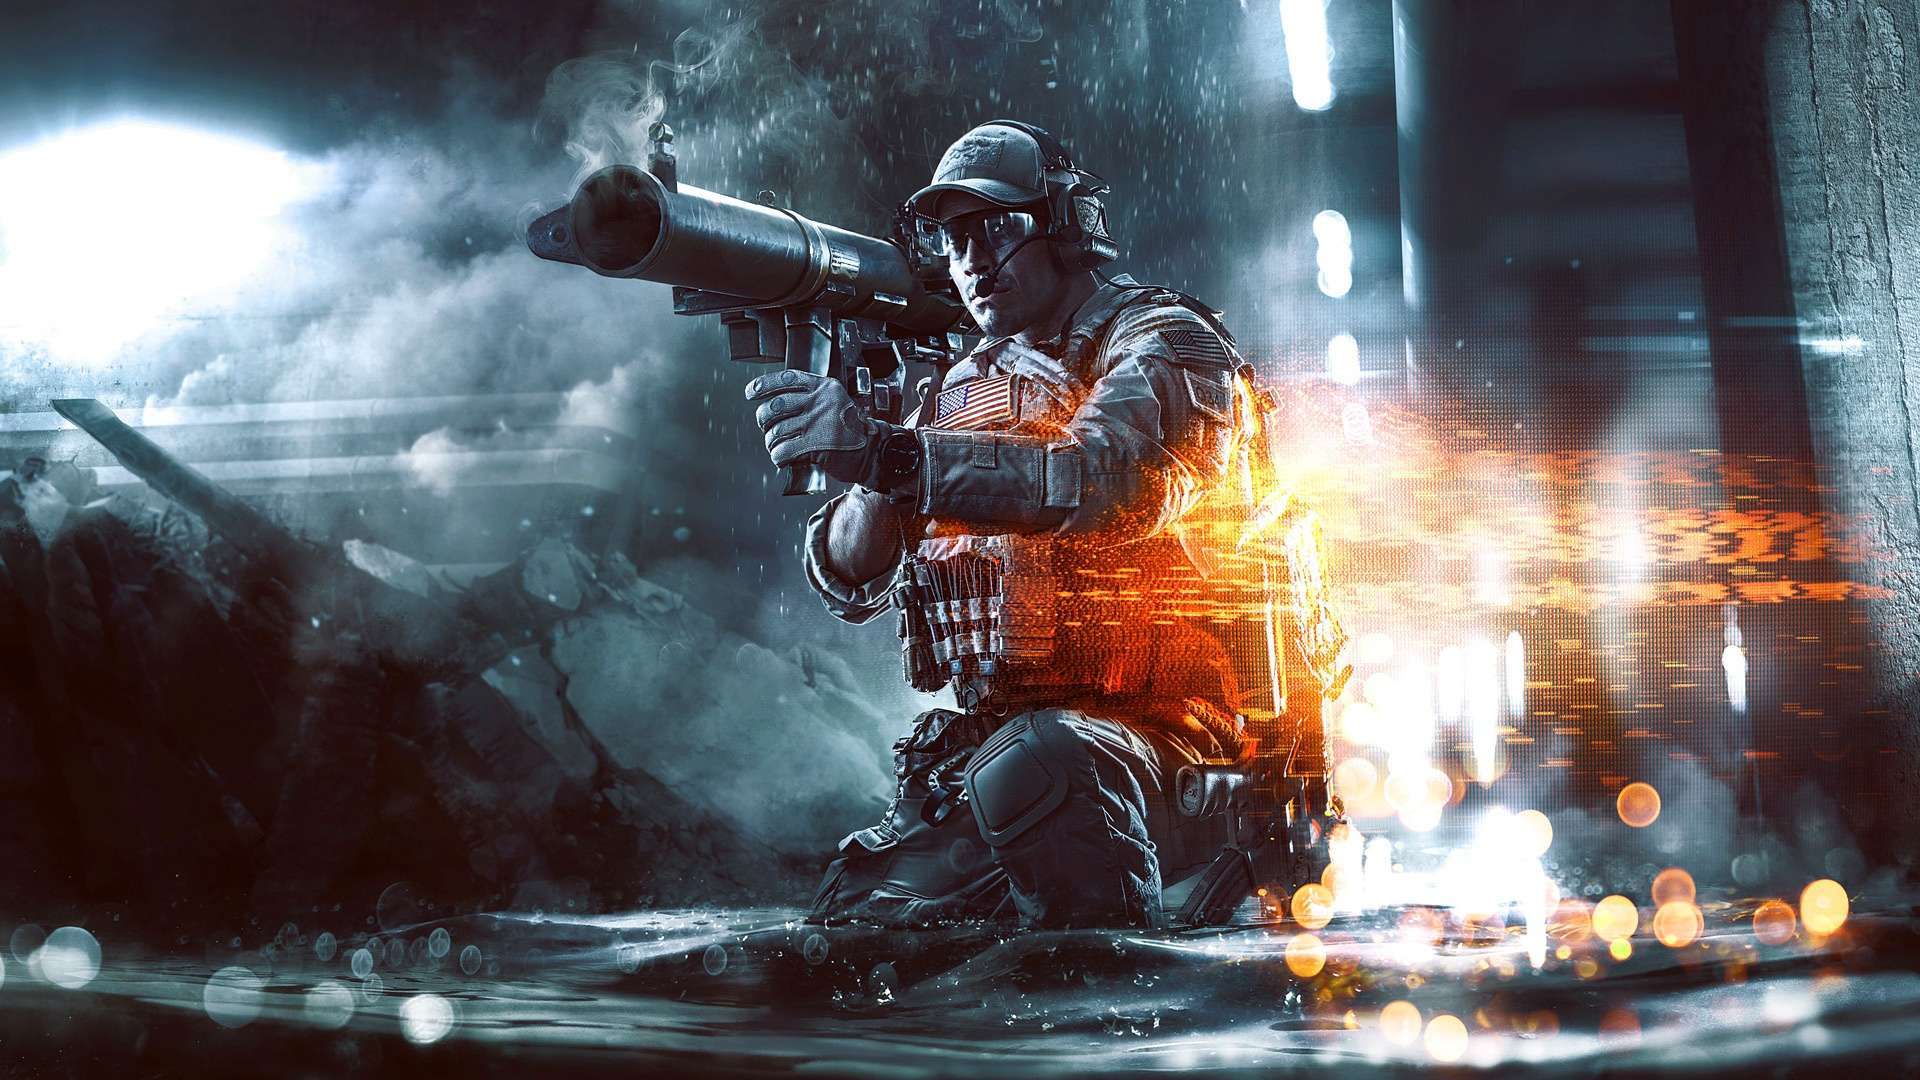 Wallpaper Battlefield 4 Second Assault HD Wallpaper 1080p Upload at